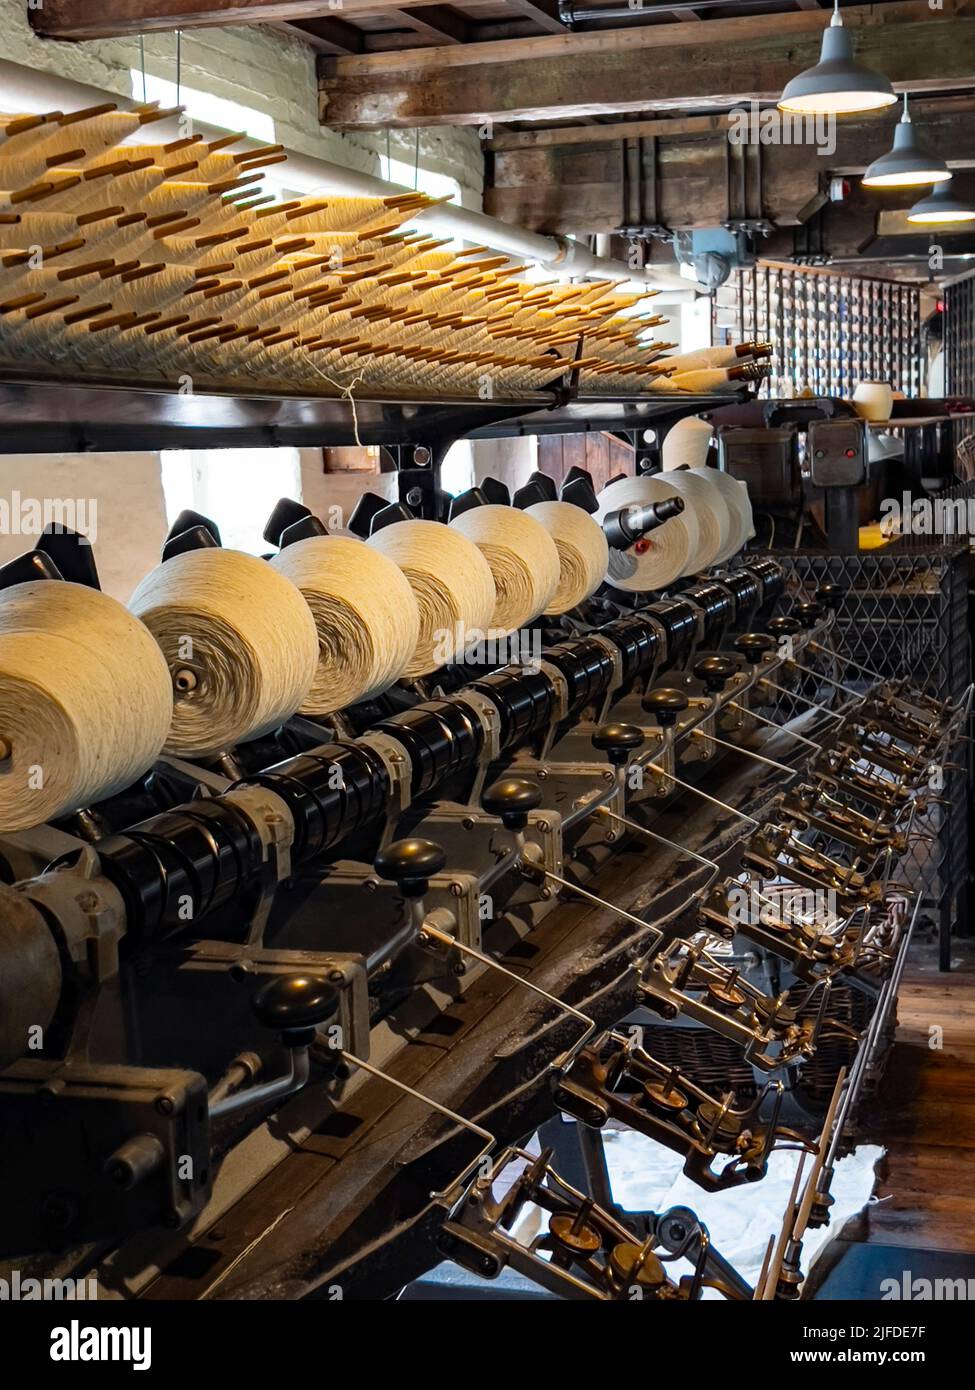 Quarry Bank Mill (auch bekannt als Styal Mill) in Styal, in der Grafschaft Héshire, im Nordwesten Englands. Es ist eine der am besten erhaltenen Textilfabriken der Industr Stockfoto